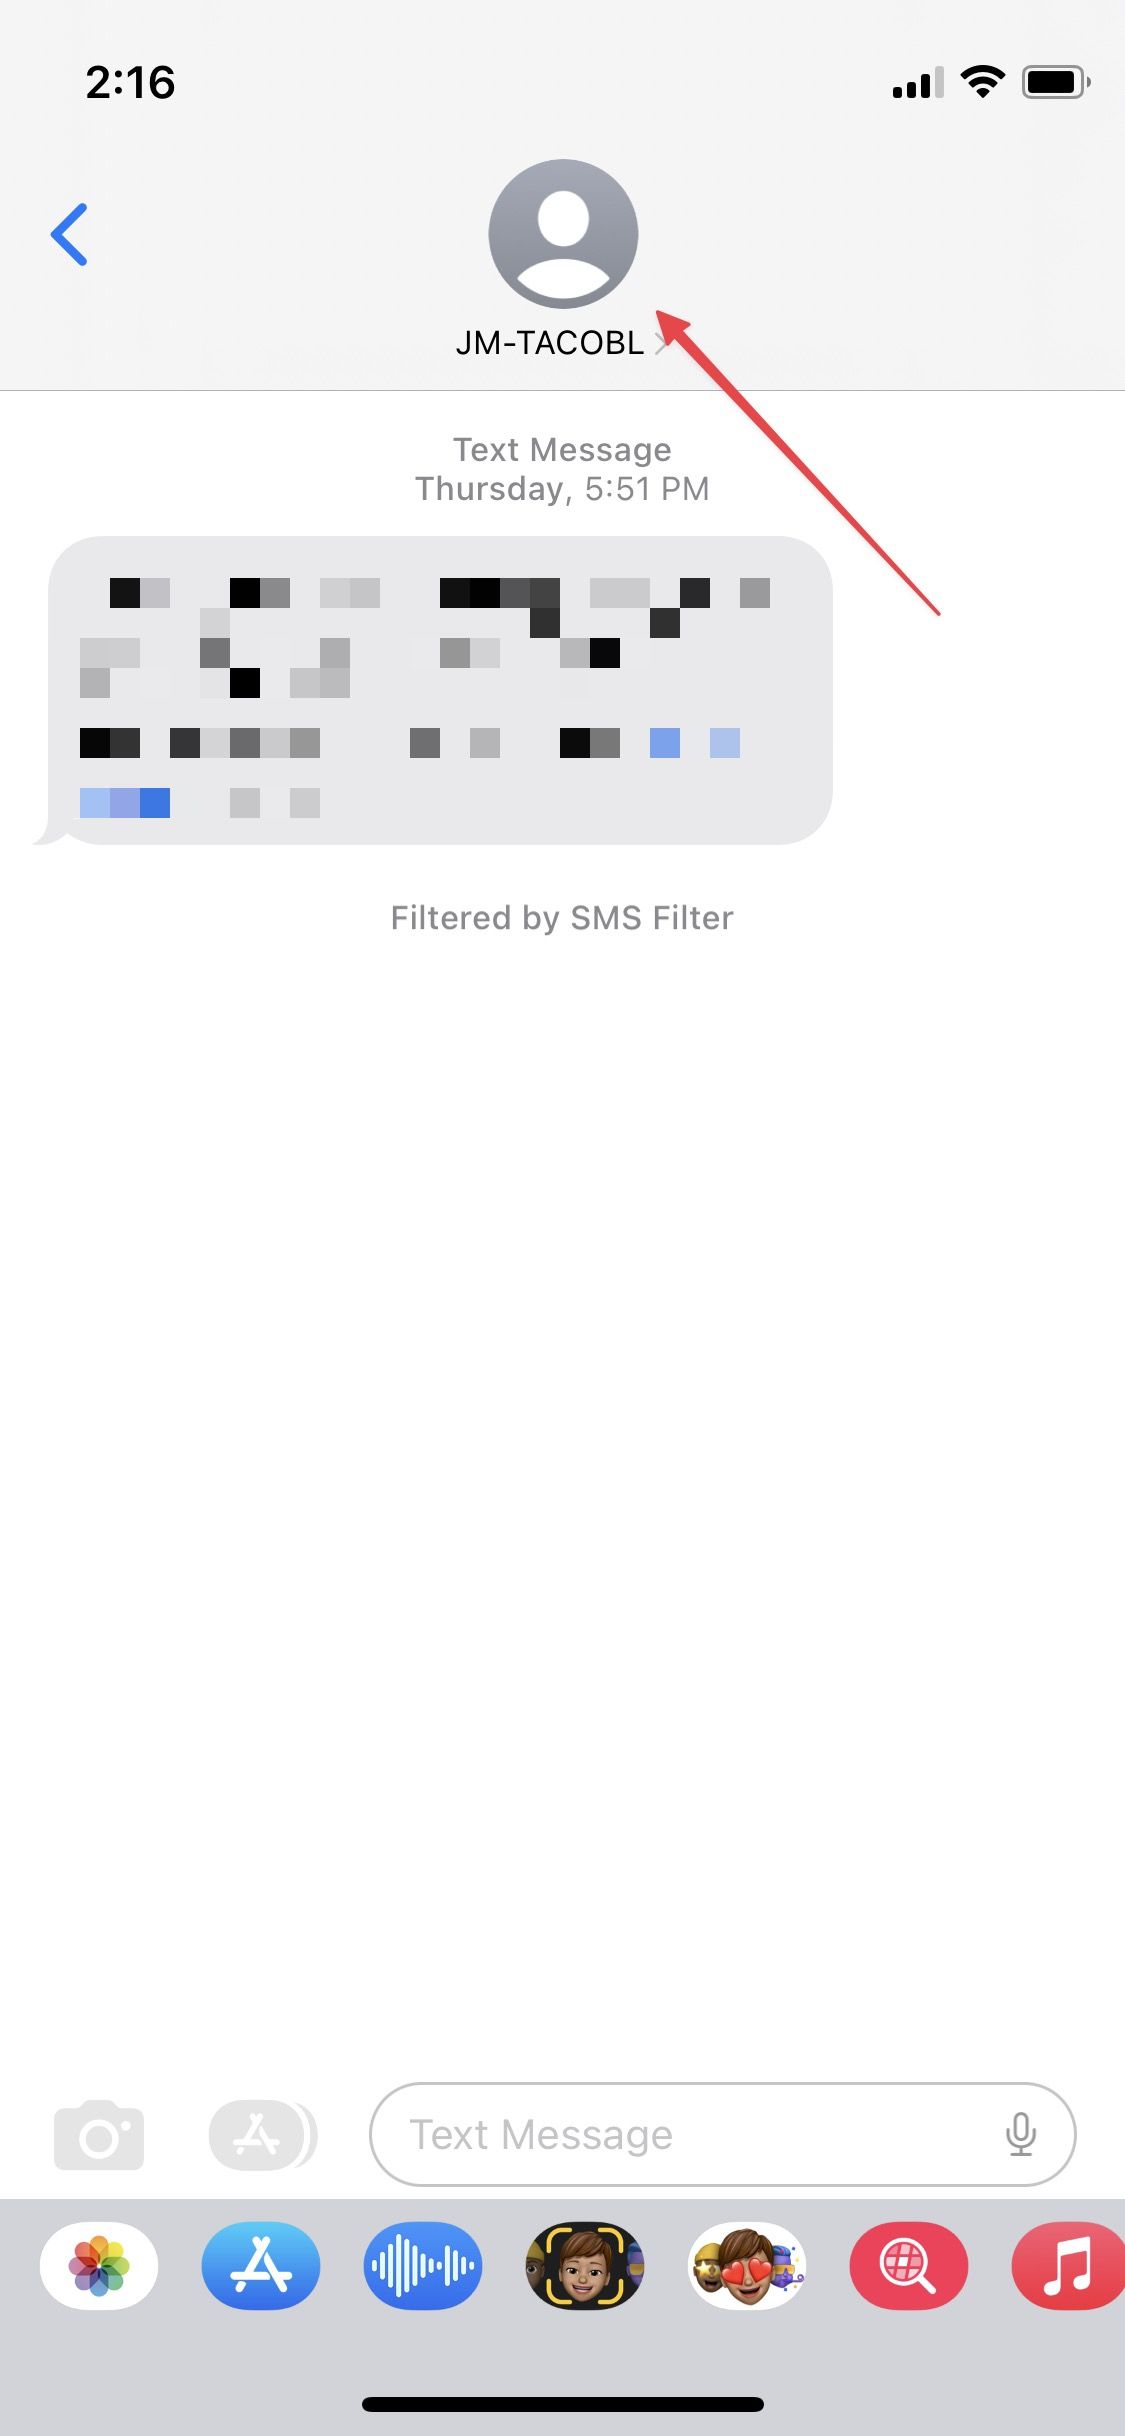 Uma captura de tela da interface de bate-papo do iMessage, exibindo uma seta apontando para o círculo do perfil de um usuário localizado na parte superior, indicando a área para acessar opções ou informações específicas do usuário.